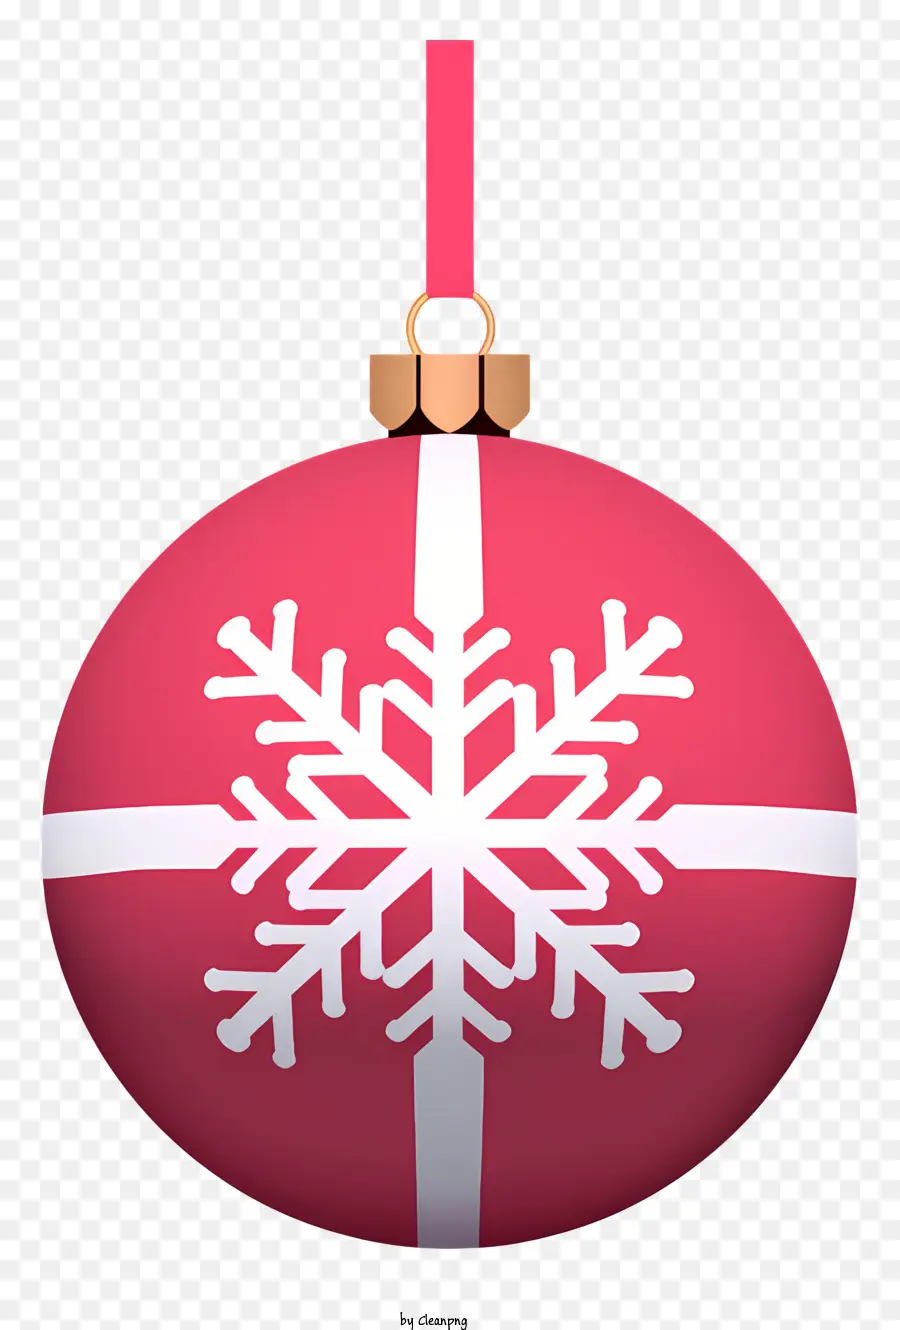 Ornamento di natale - Ornamento natalizio rosso festivo con design del fiocco di neve